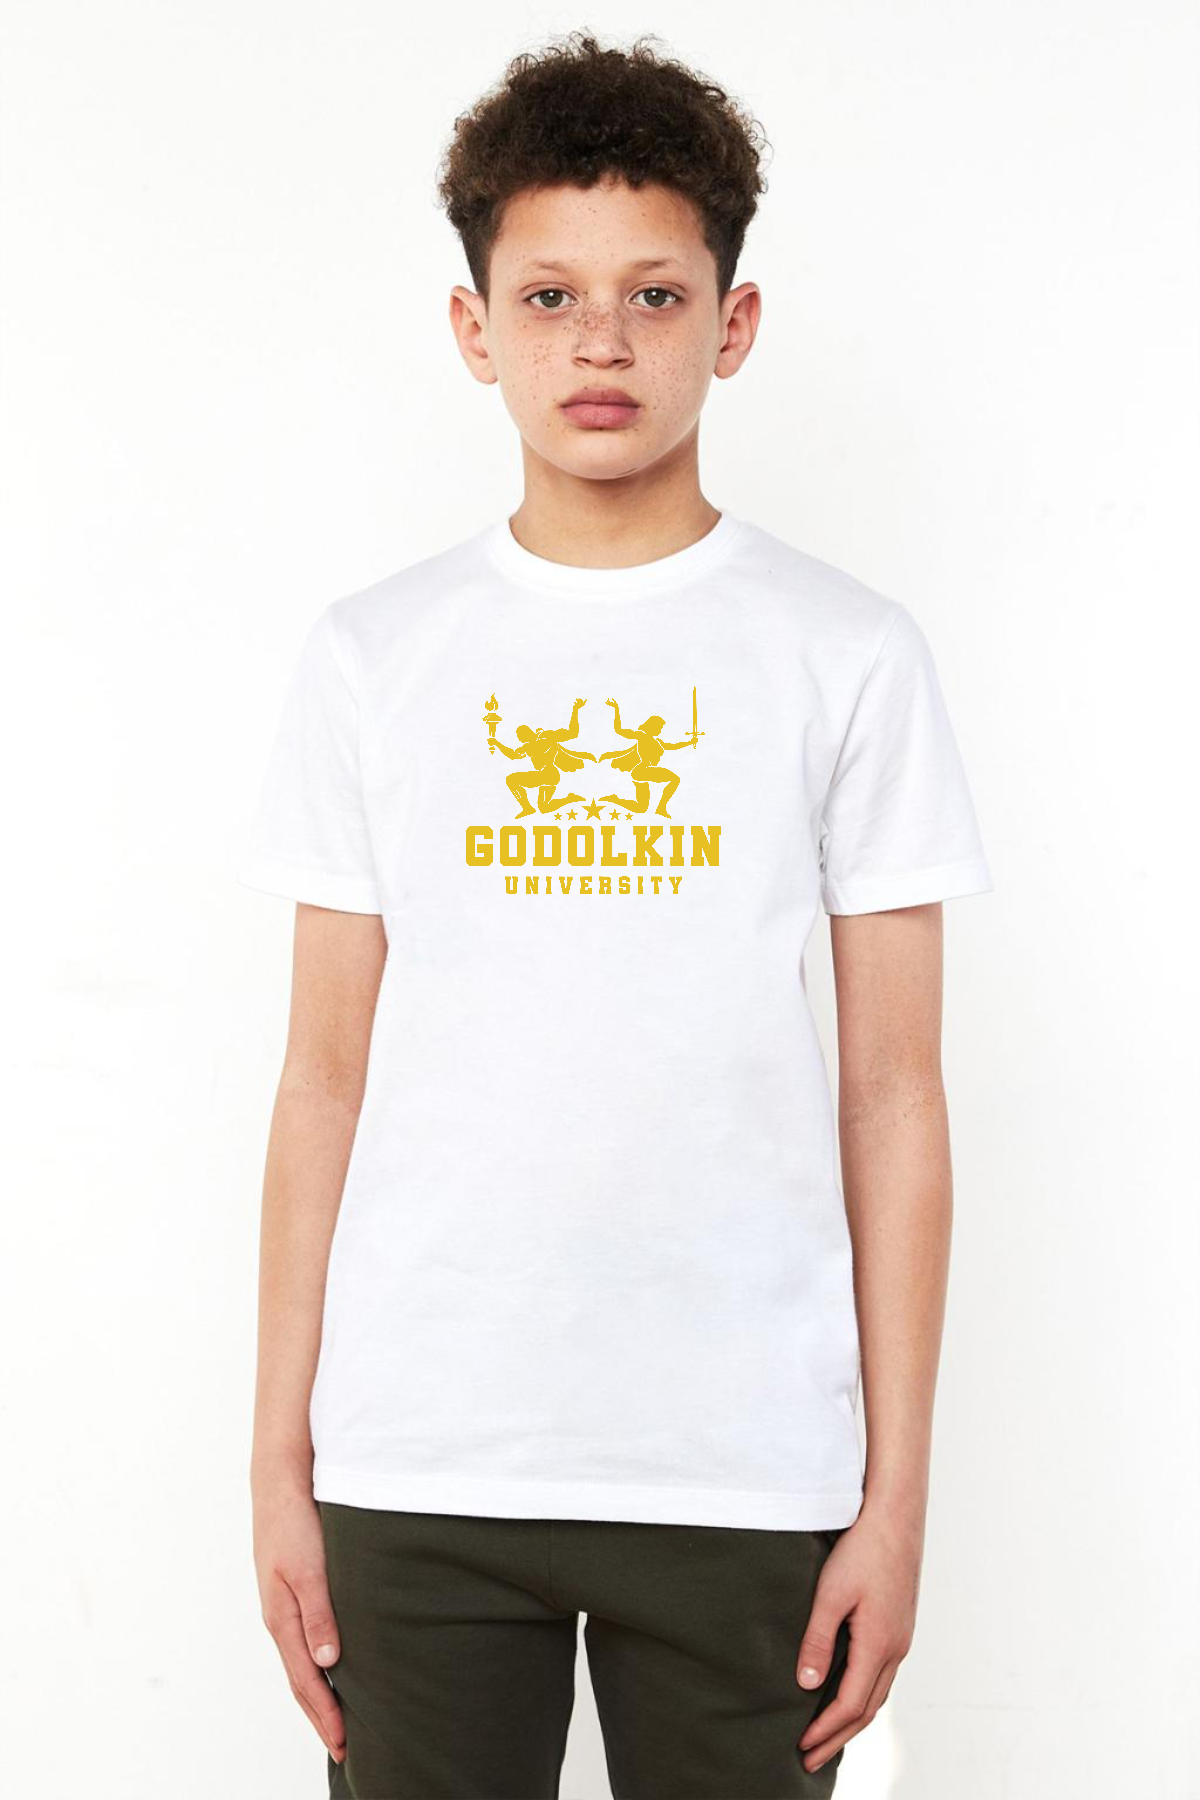 Gen V Godolkin University Logo Beyaz Çocuk Bisikletyaka Tshirt